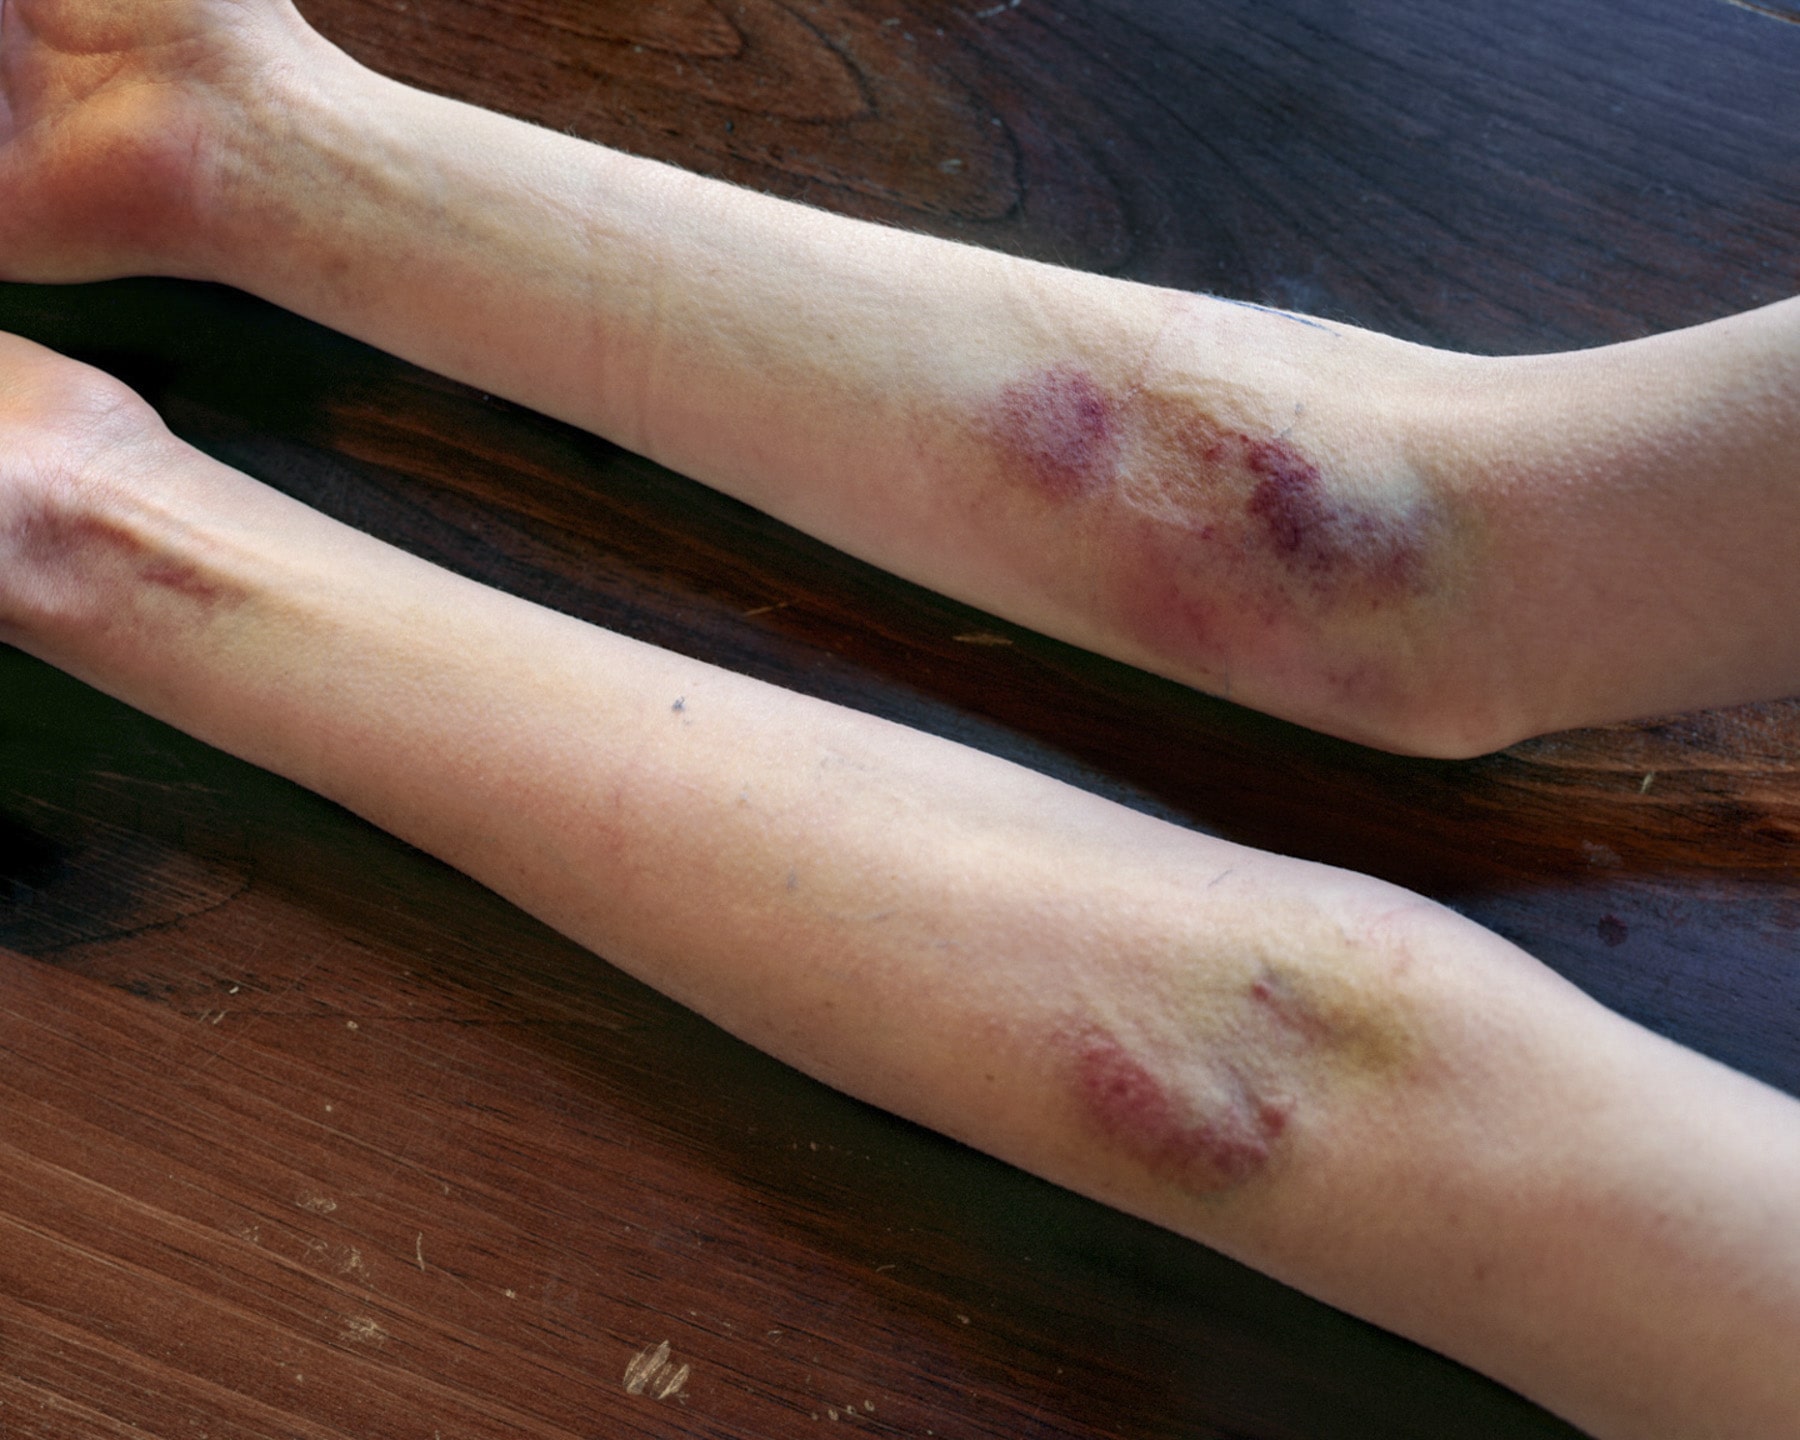 IV Bruises